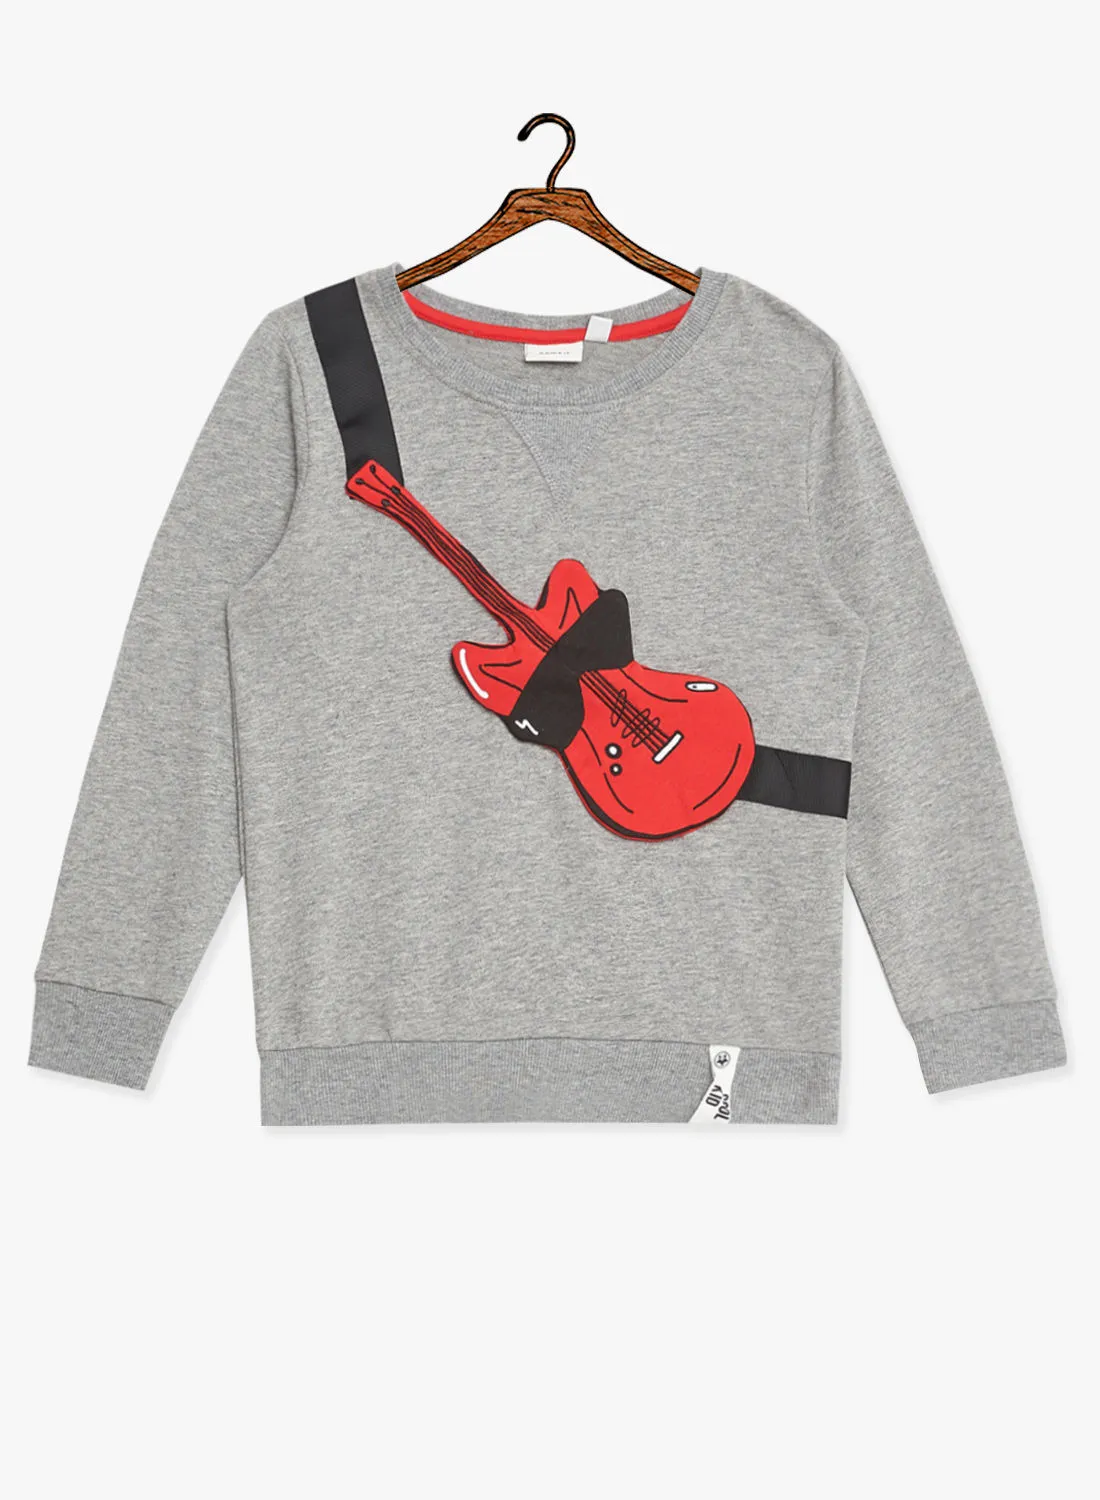 NAME IT Boys Guitar Applique Sweatshirt Grey